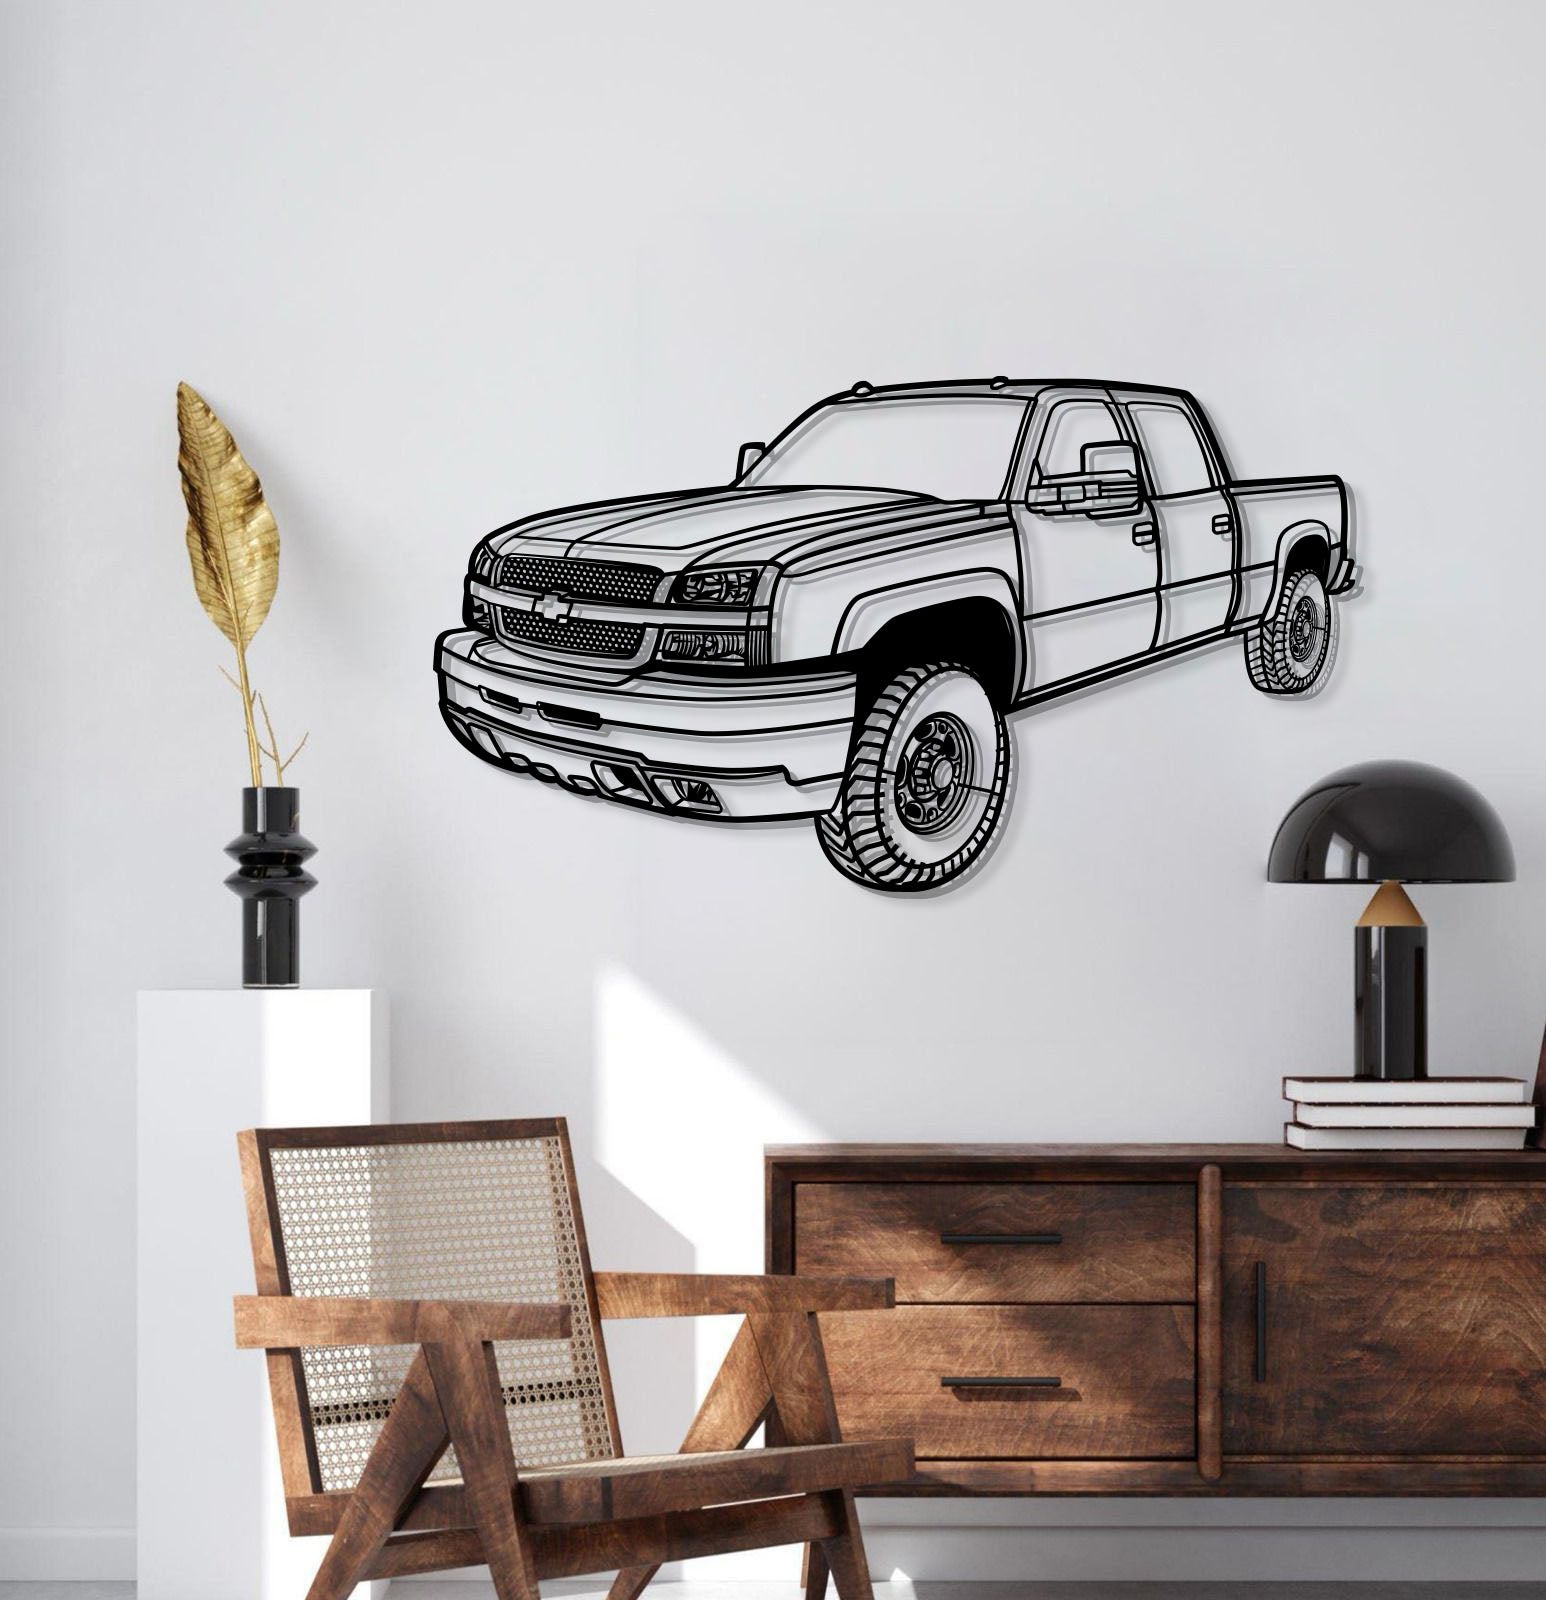 2003 Silverado 2500 Perspective Metal Car Wall Art - MT1256